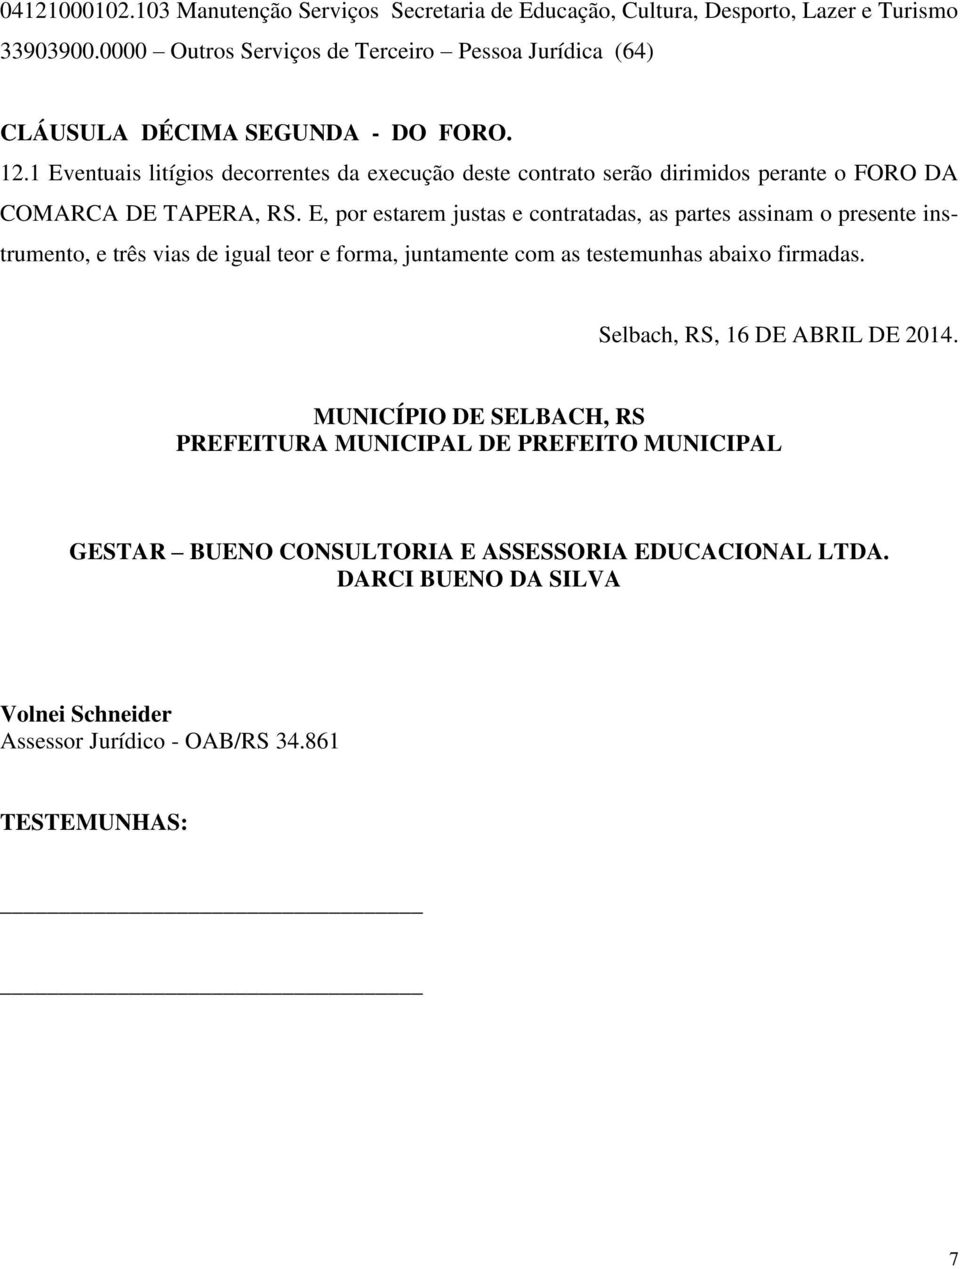 1 Eventuais litígios decorrentes da execução deste contrato serão dirimidos perante o FORO DA COMARCA DE TAPERA, RS.